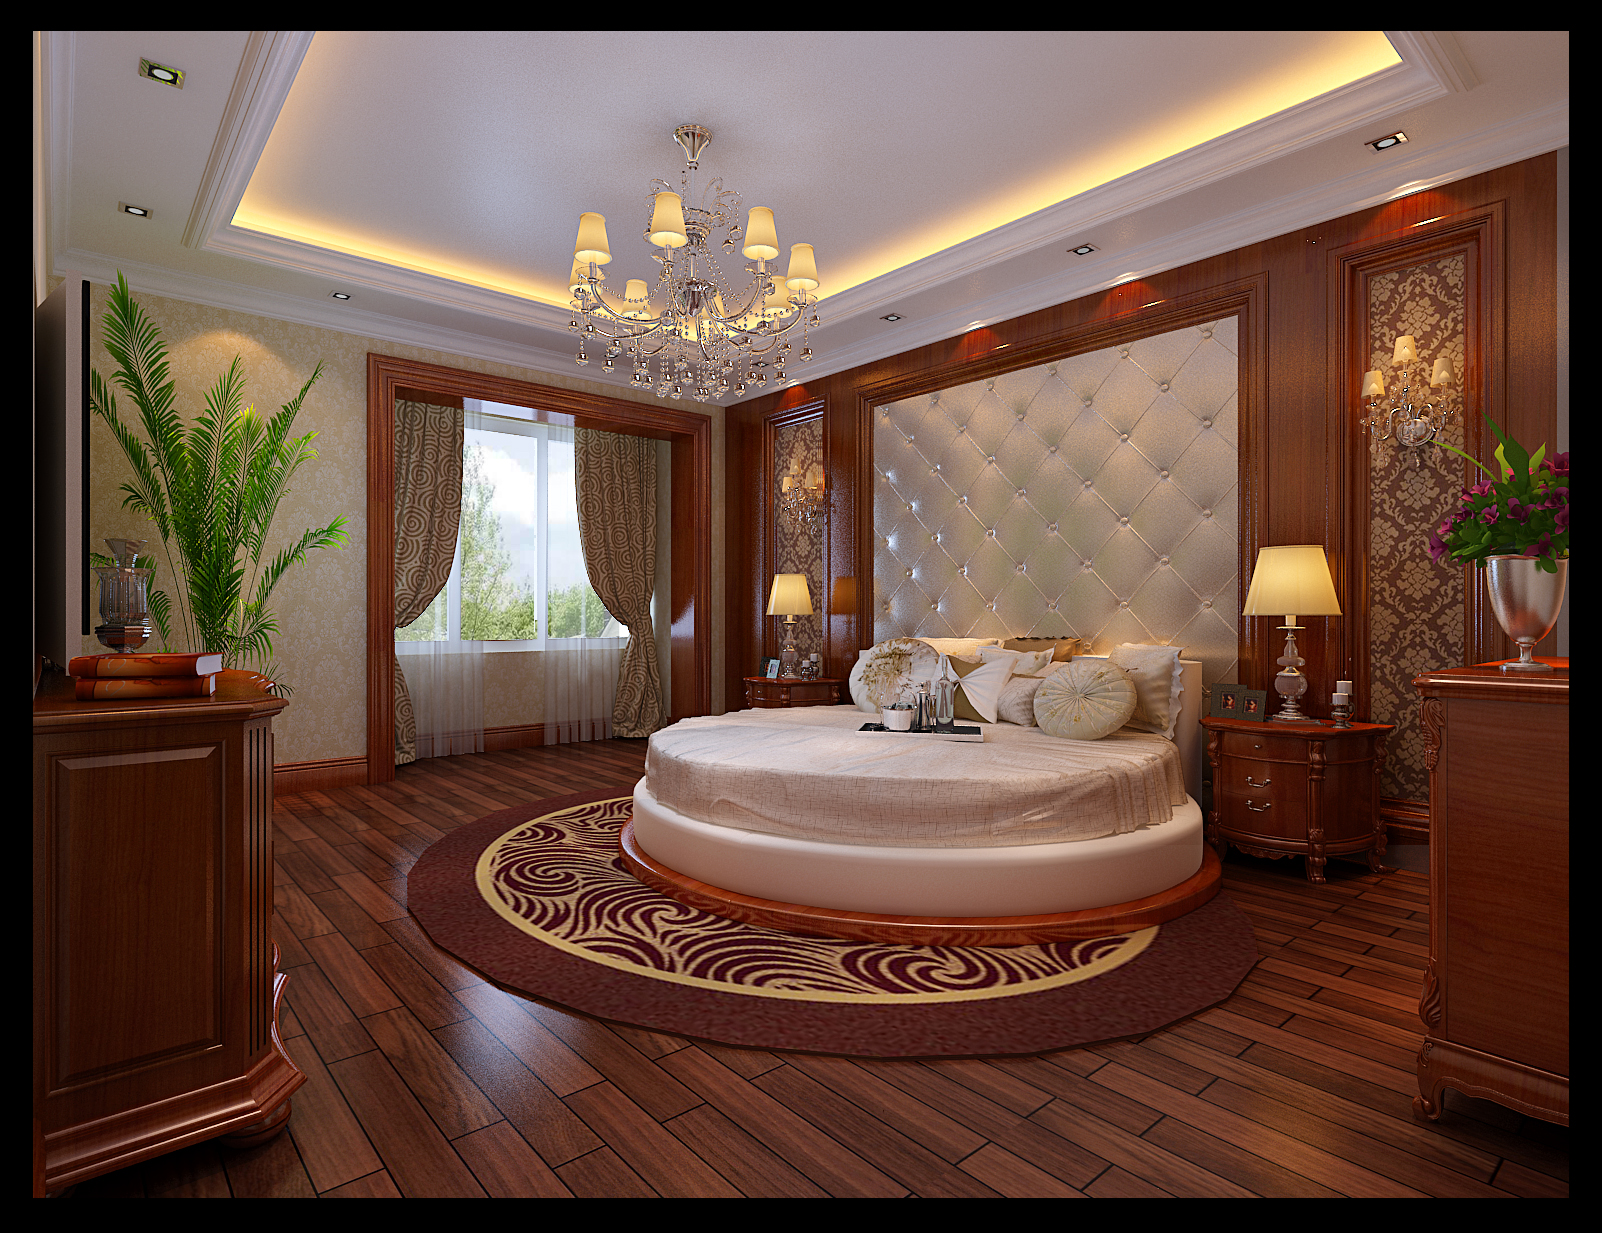 欧式 三居 新房装修 北京元洲 效果图 卧室图片来自榜眼2014在280平华鼎世家 任性的美式古典风的分享